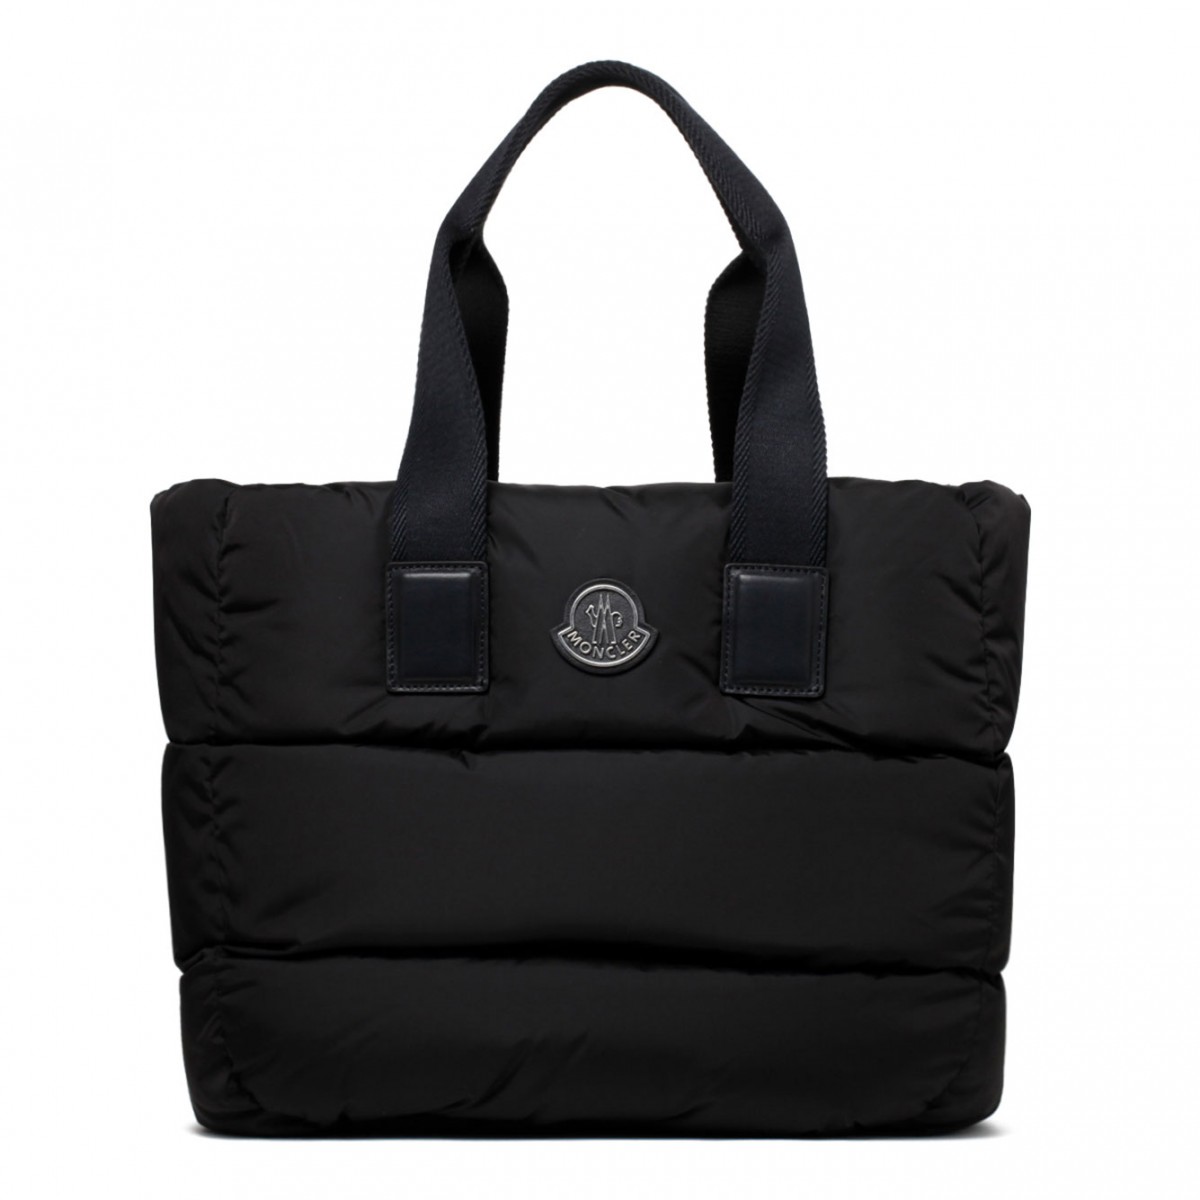 Black Caradoc Tote Bag